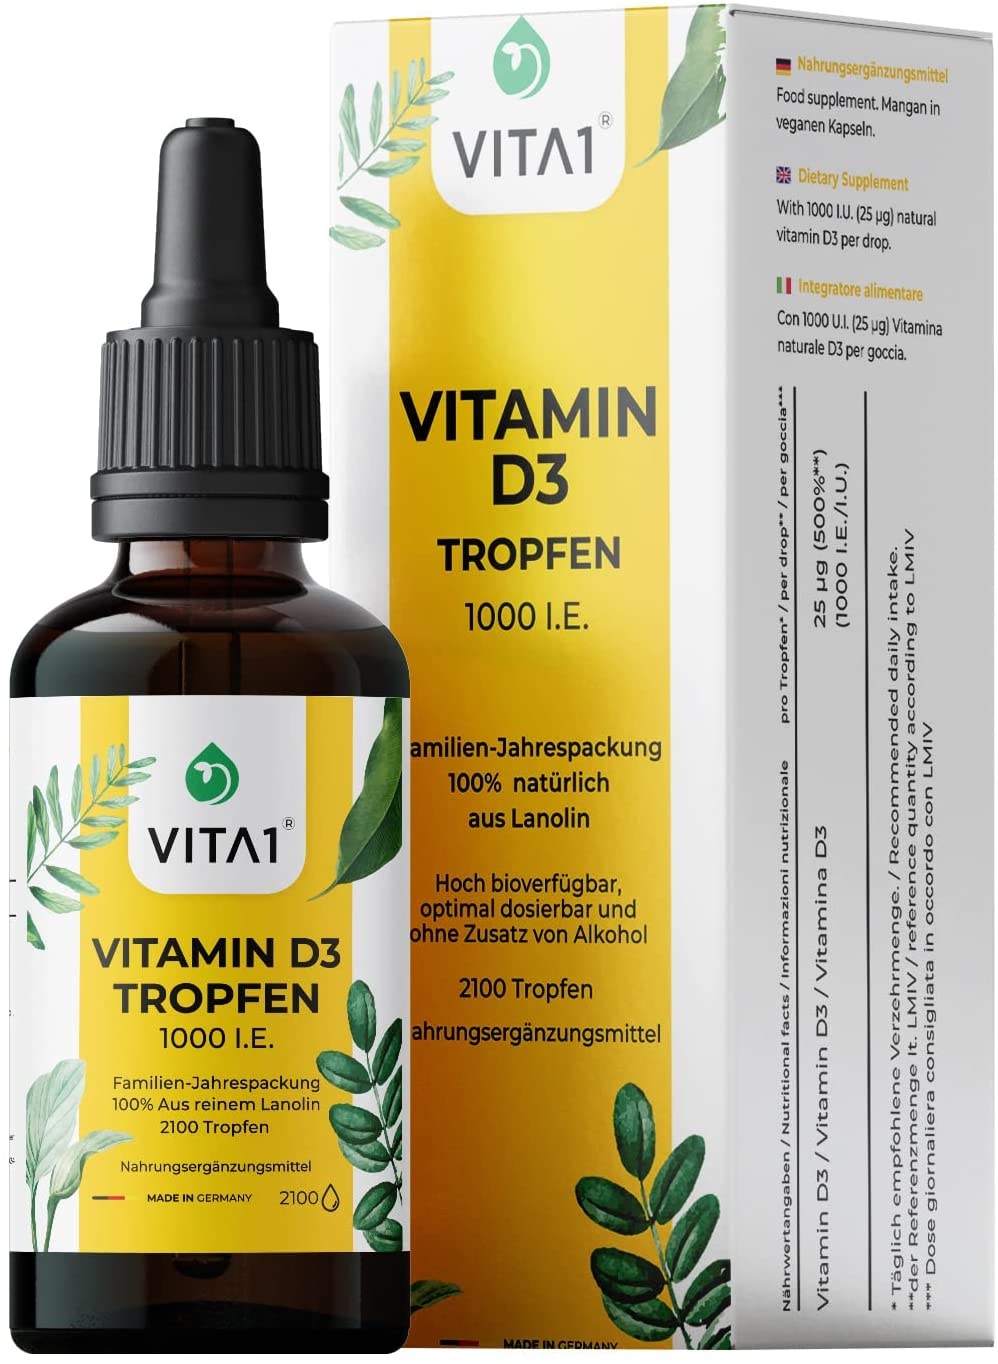 VITA1 Vitamin D3 Tropfen hochdosiert 1000 I.E. pro Tropfen • 50 ml • vegetarisch • für Knochen und Immunsystem • rein natürlich aus Lanolin